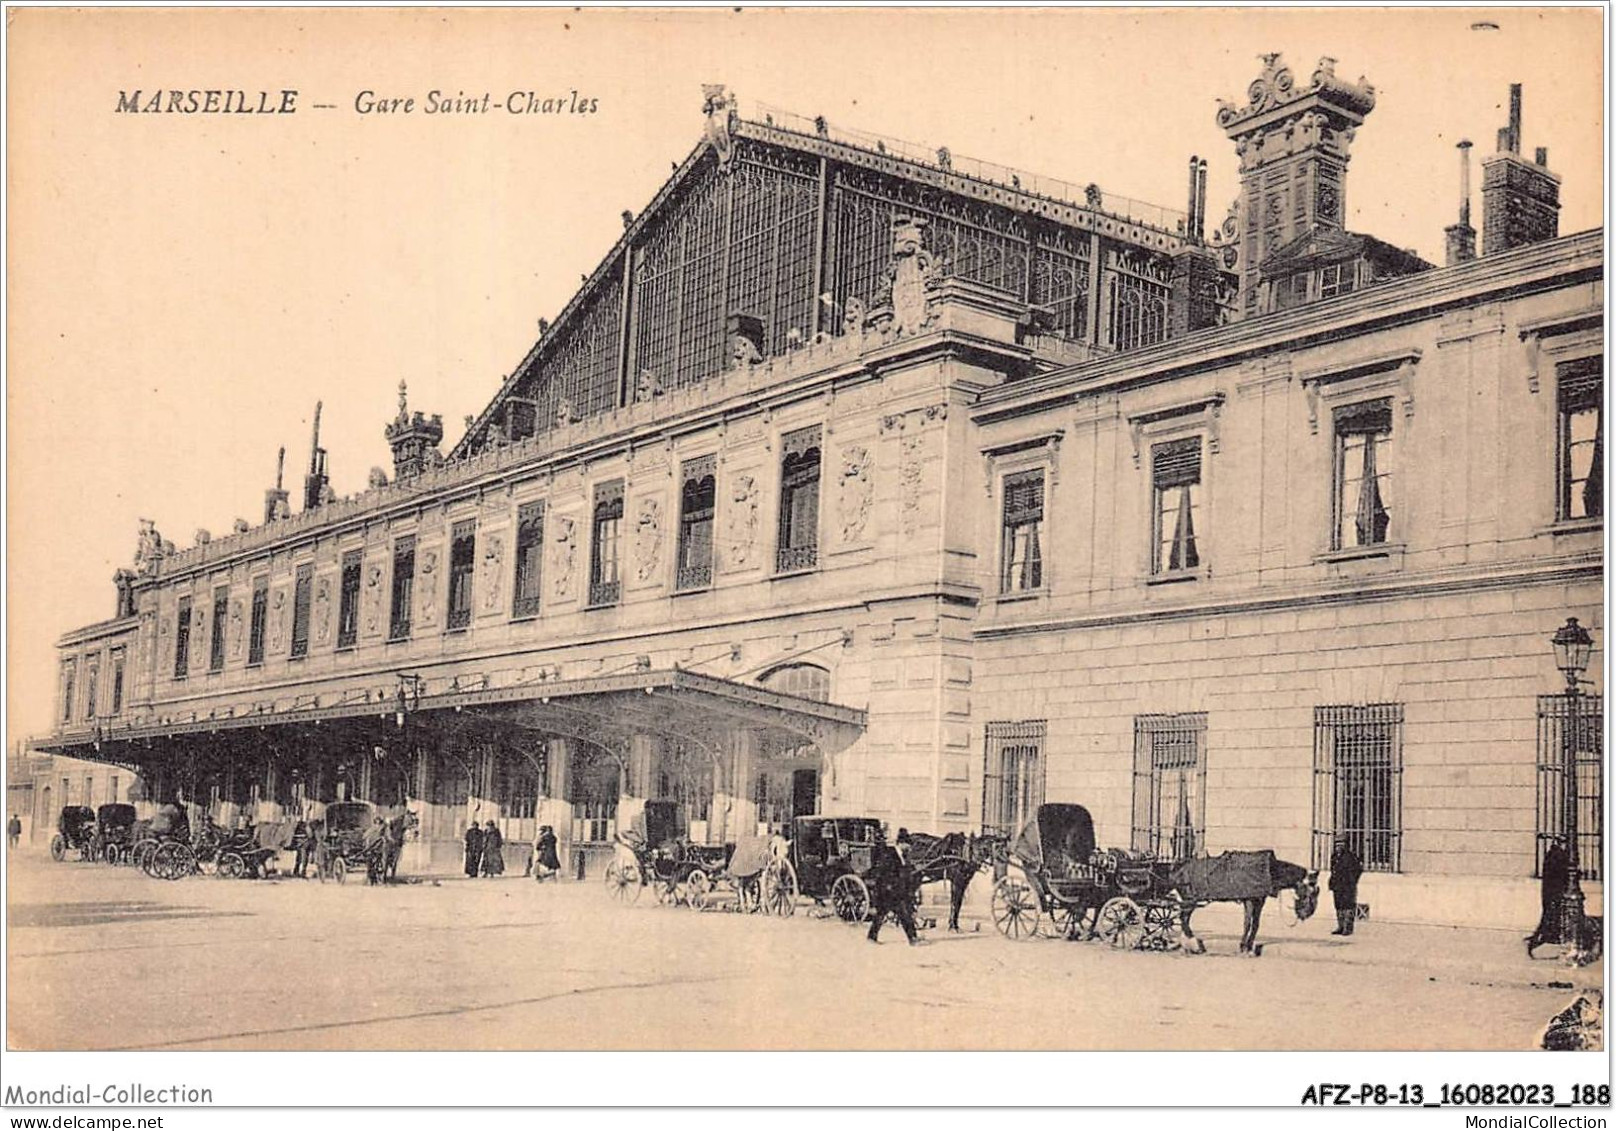 AFZP8-13-0682 - MARSEILLE - Gare Saint-charles - Stationsbuurt, Belle De Mai, Plombières